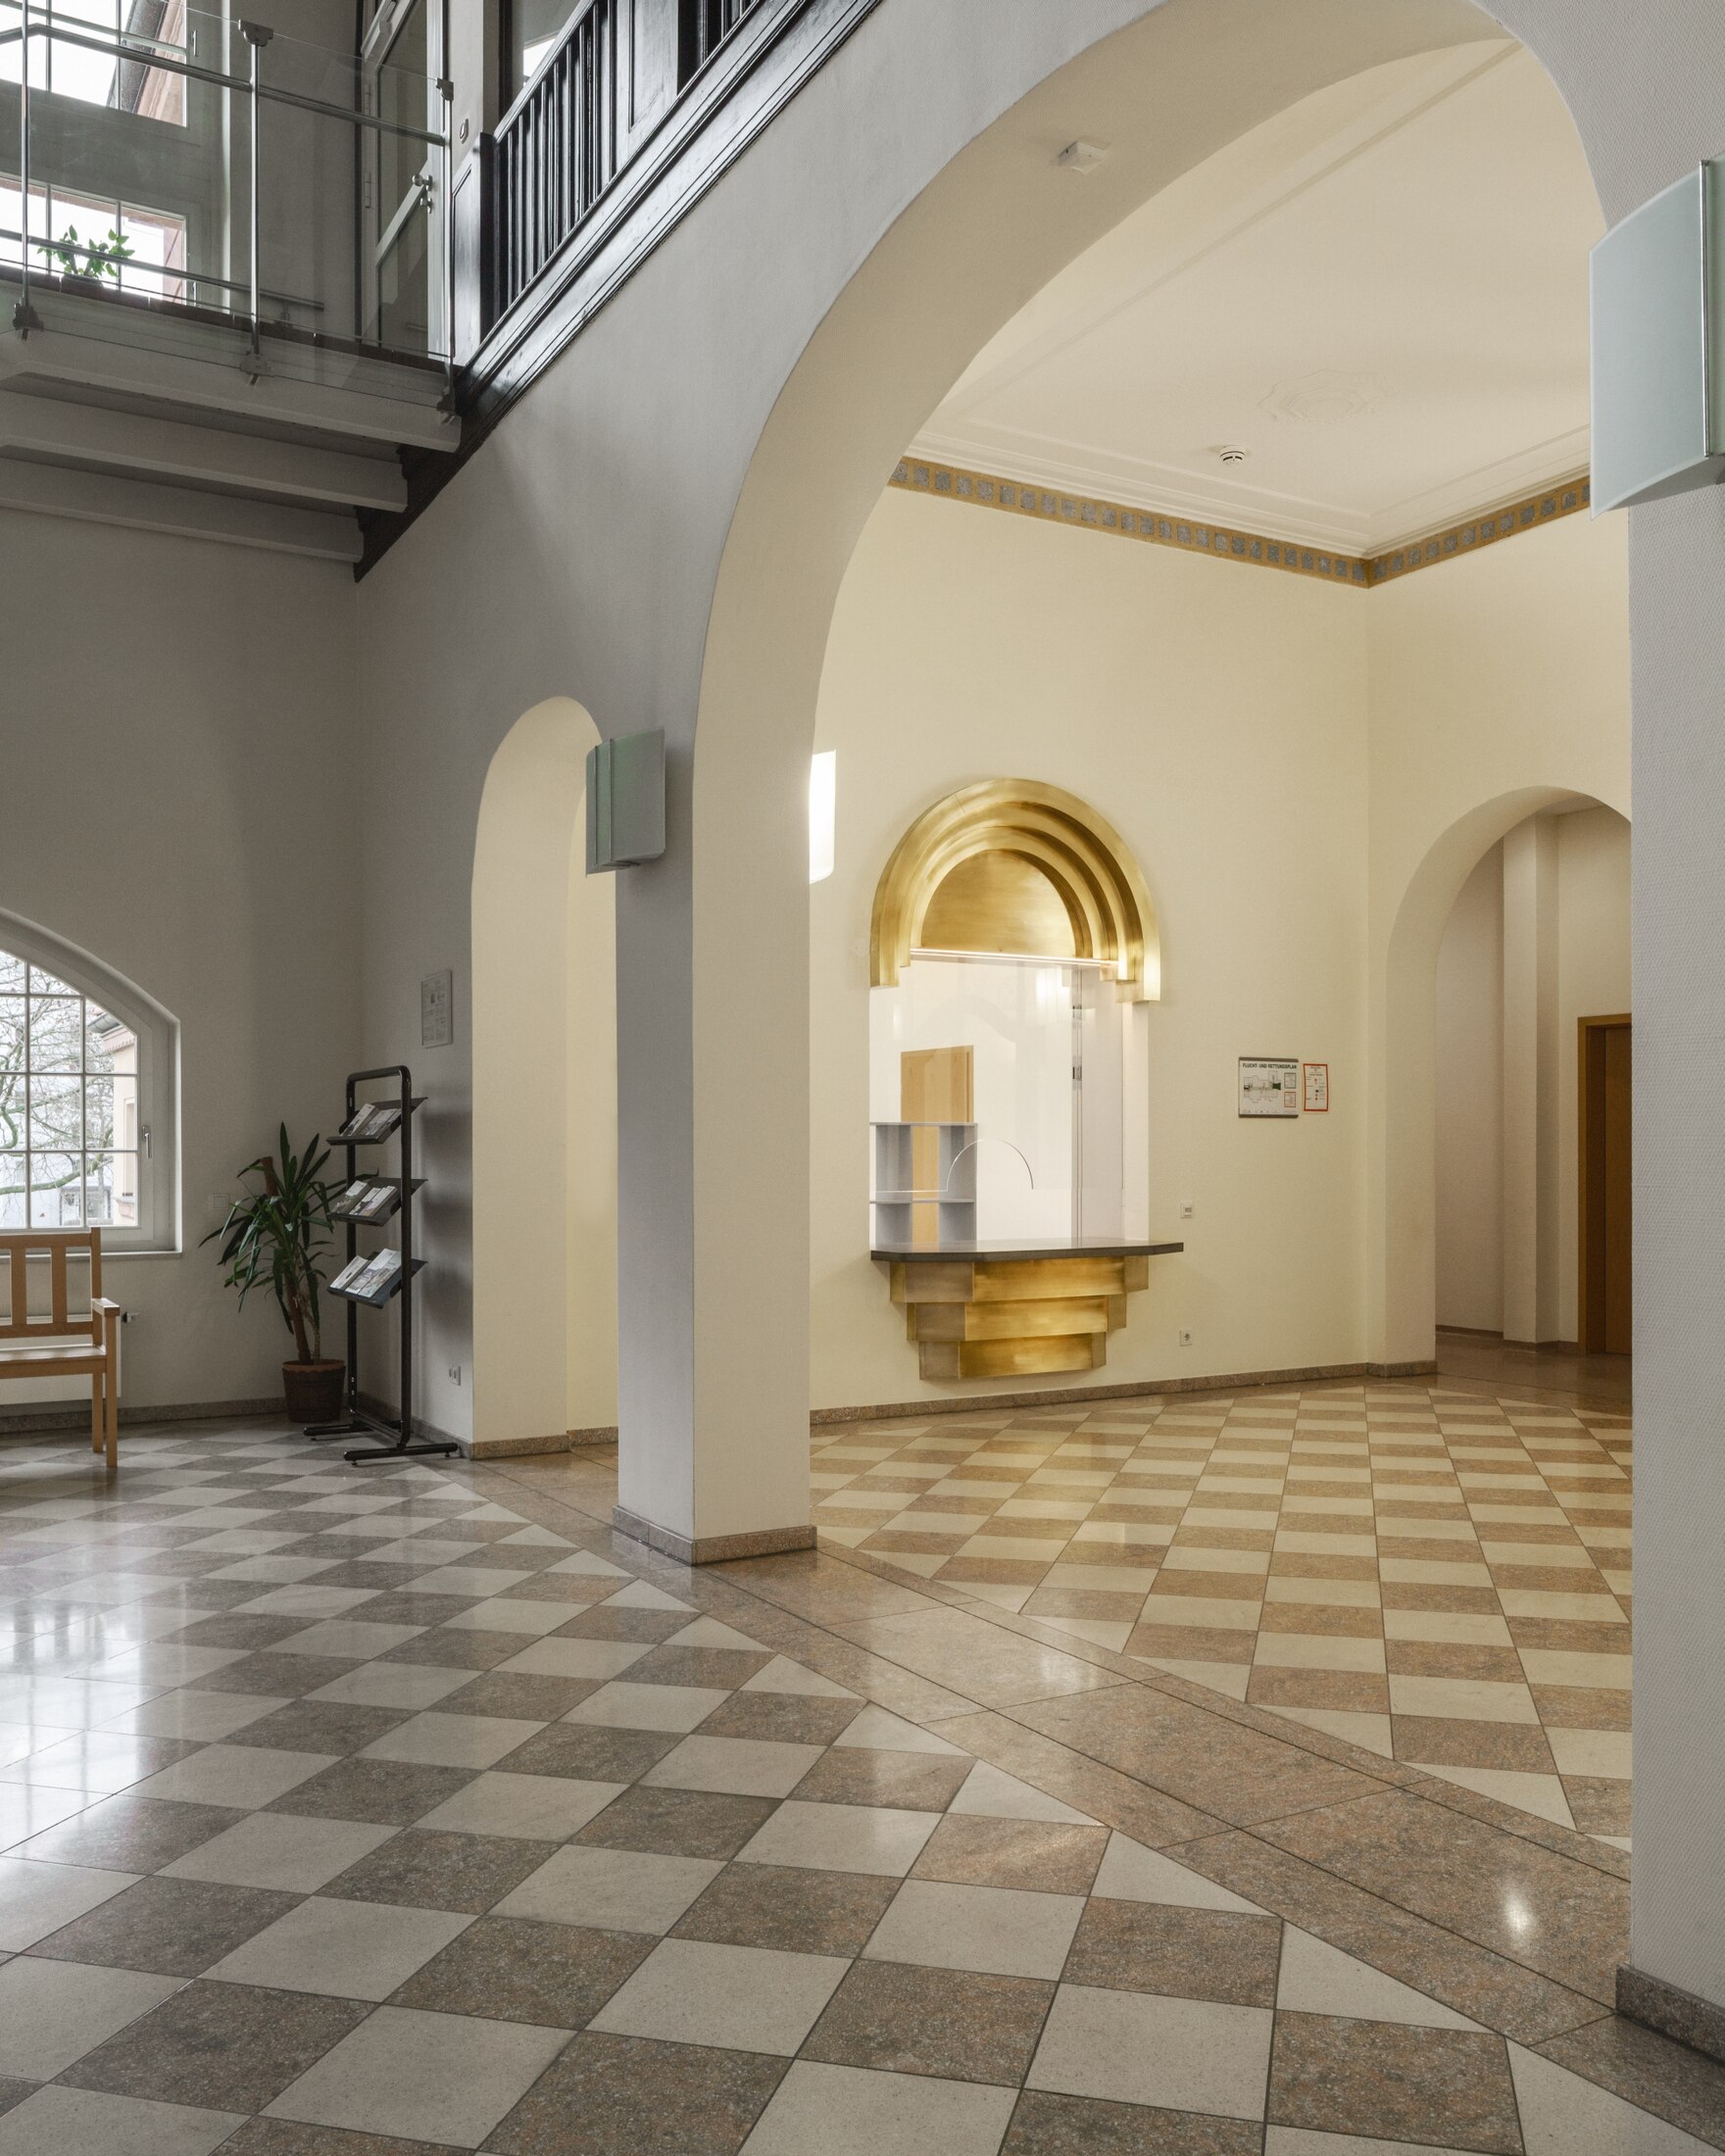 Im sanierten Eingangsbereich sticht die Kanzel mit ihren golden-schimmernden Messingelementen deutlich hervor.